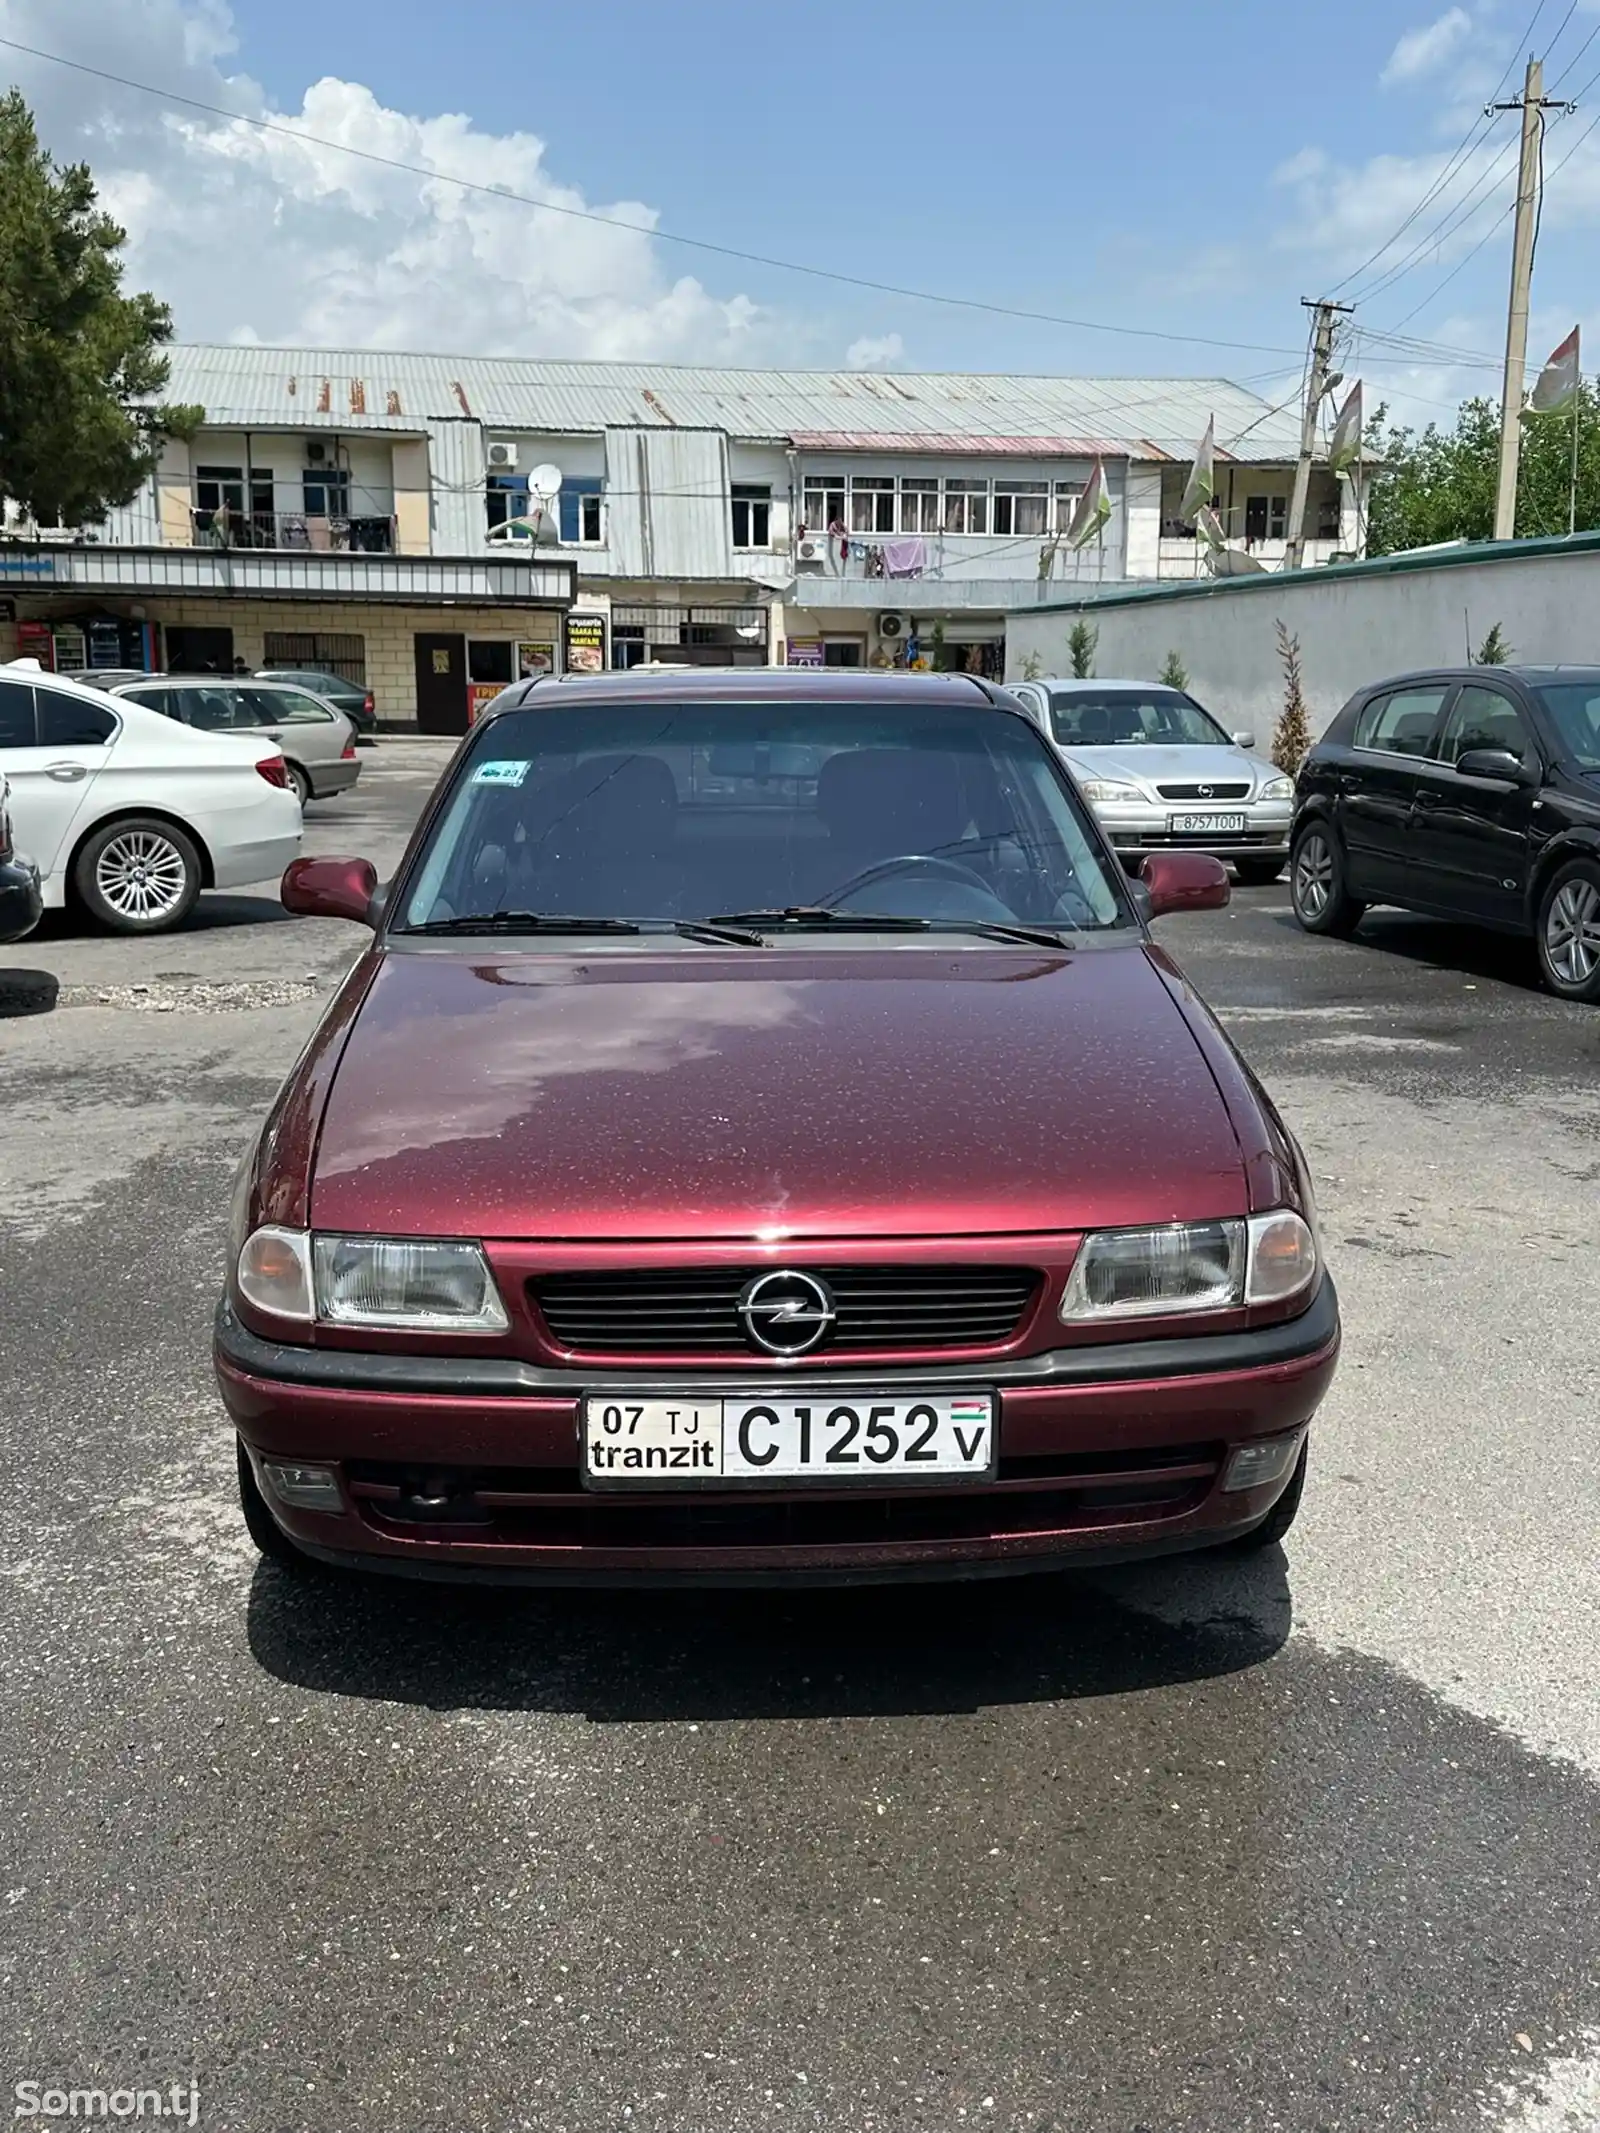 Opel Astra F, 1998-1